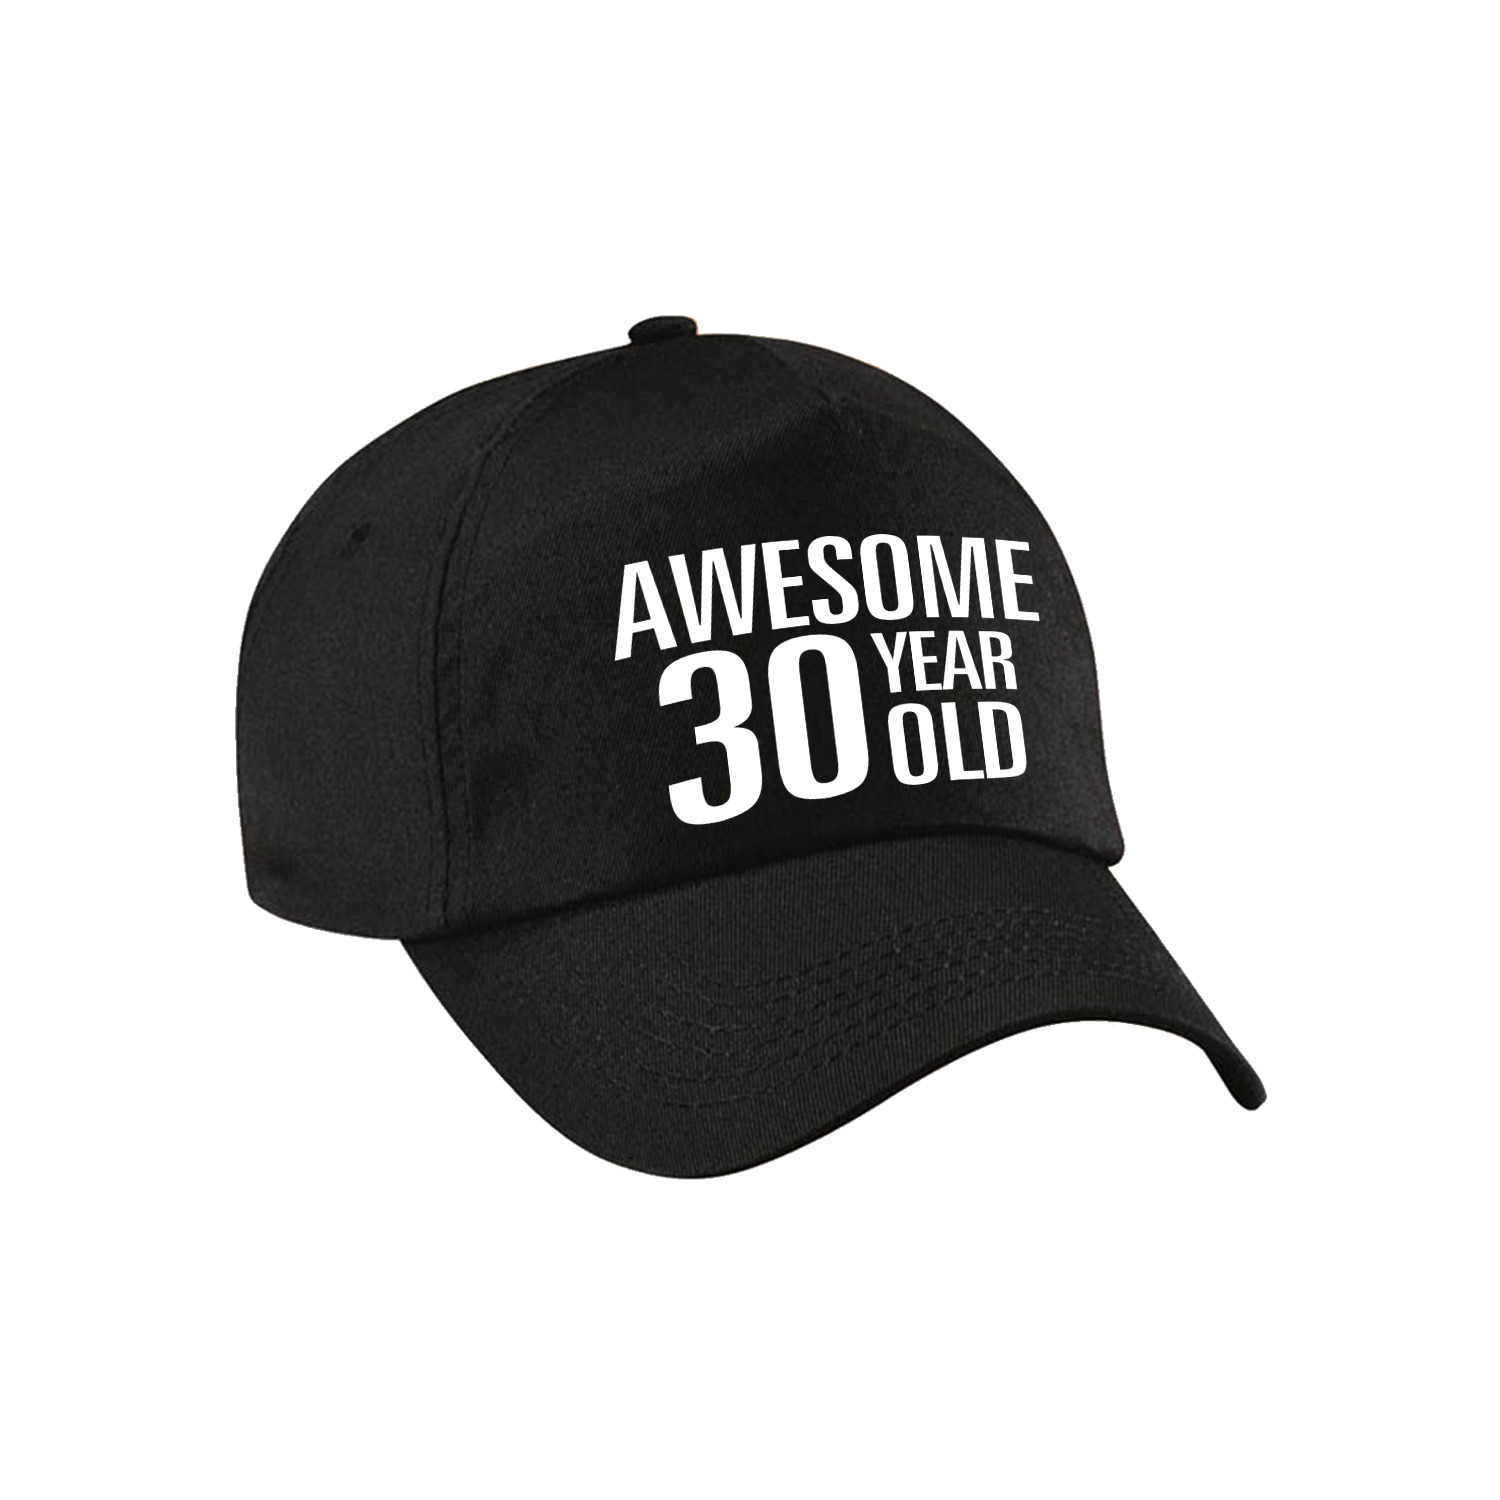 Awesome 30 year old verjaardag pet / cap zwart voor dames en heren